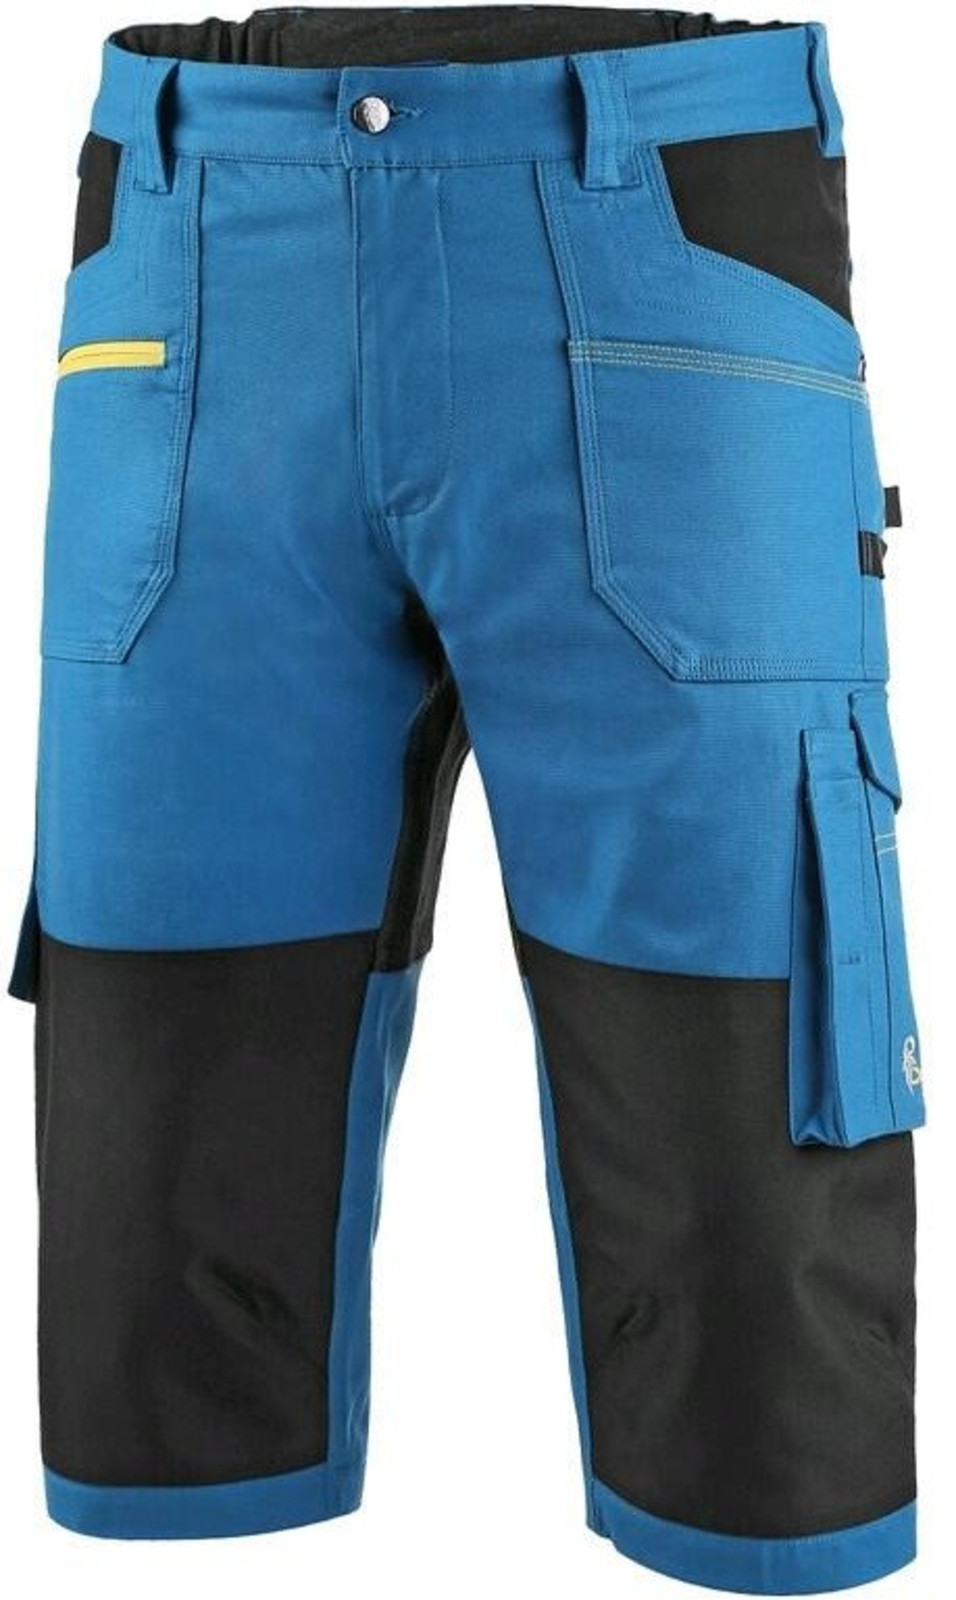 Pánske strečové montérkové 3/4 nohavice CXS Stretch - veľkosť: 46, farba: modrá/čierna